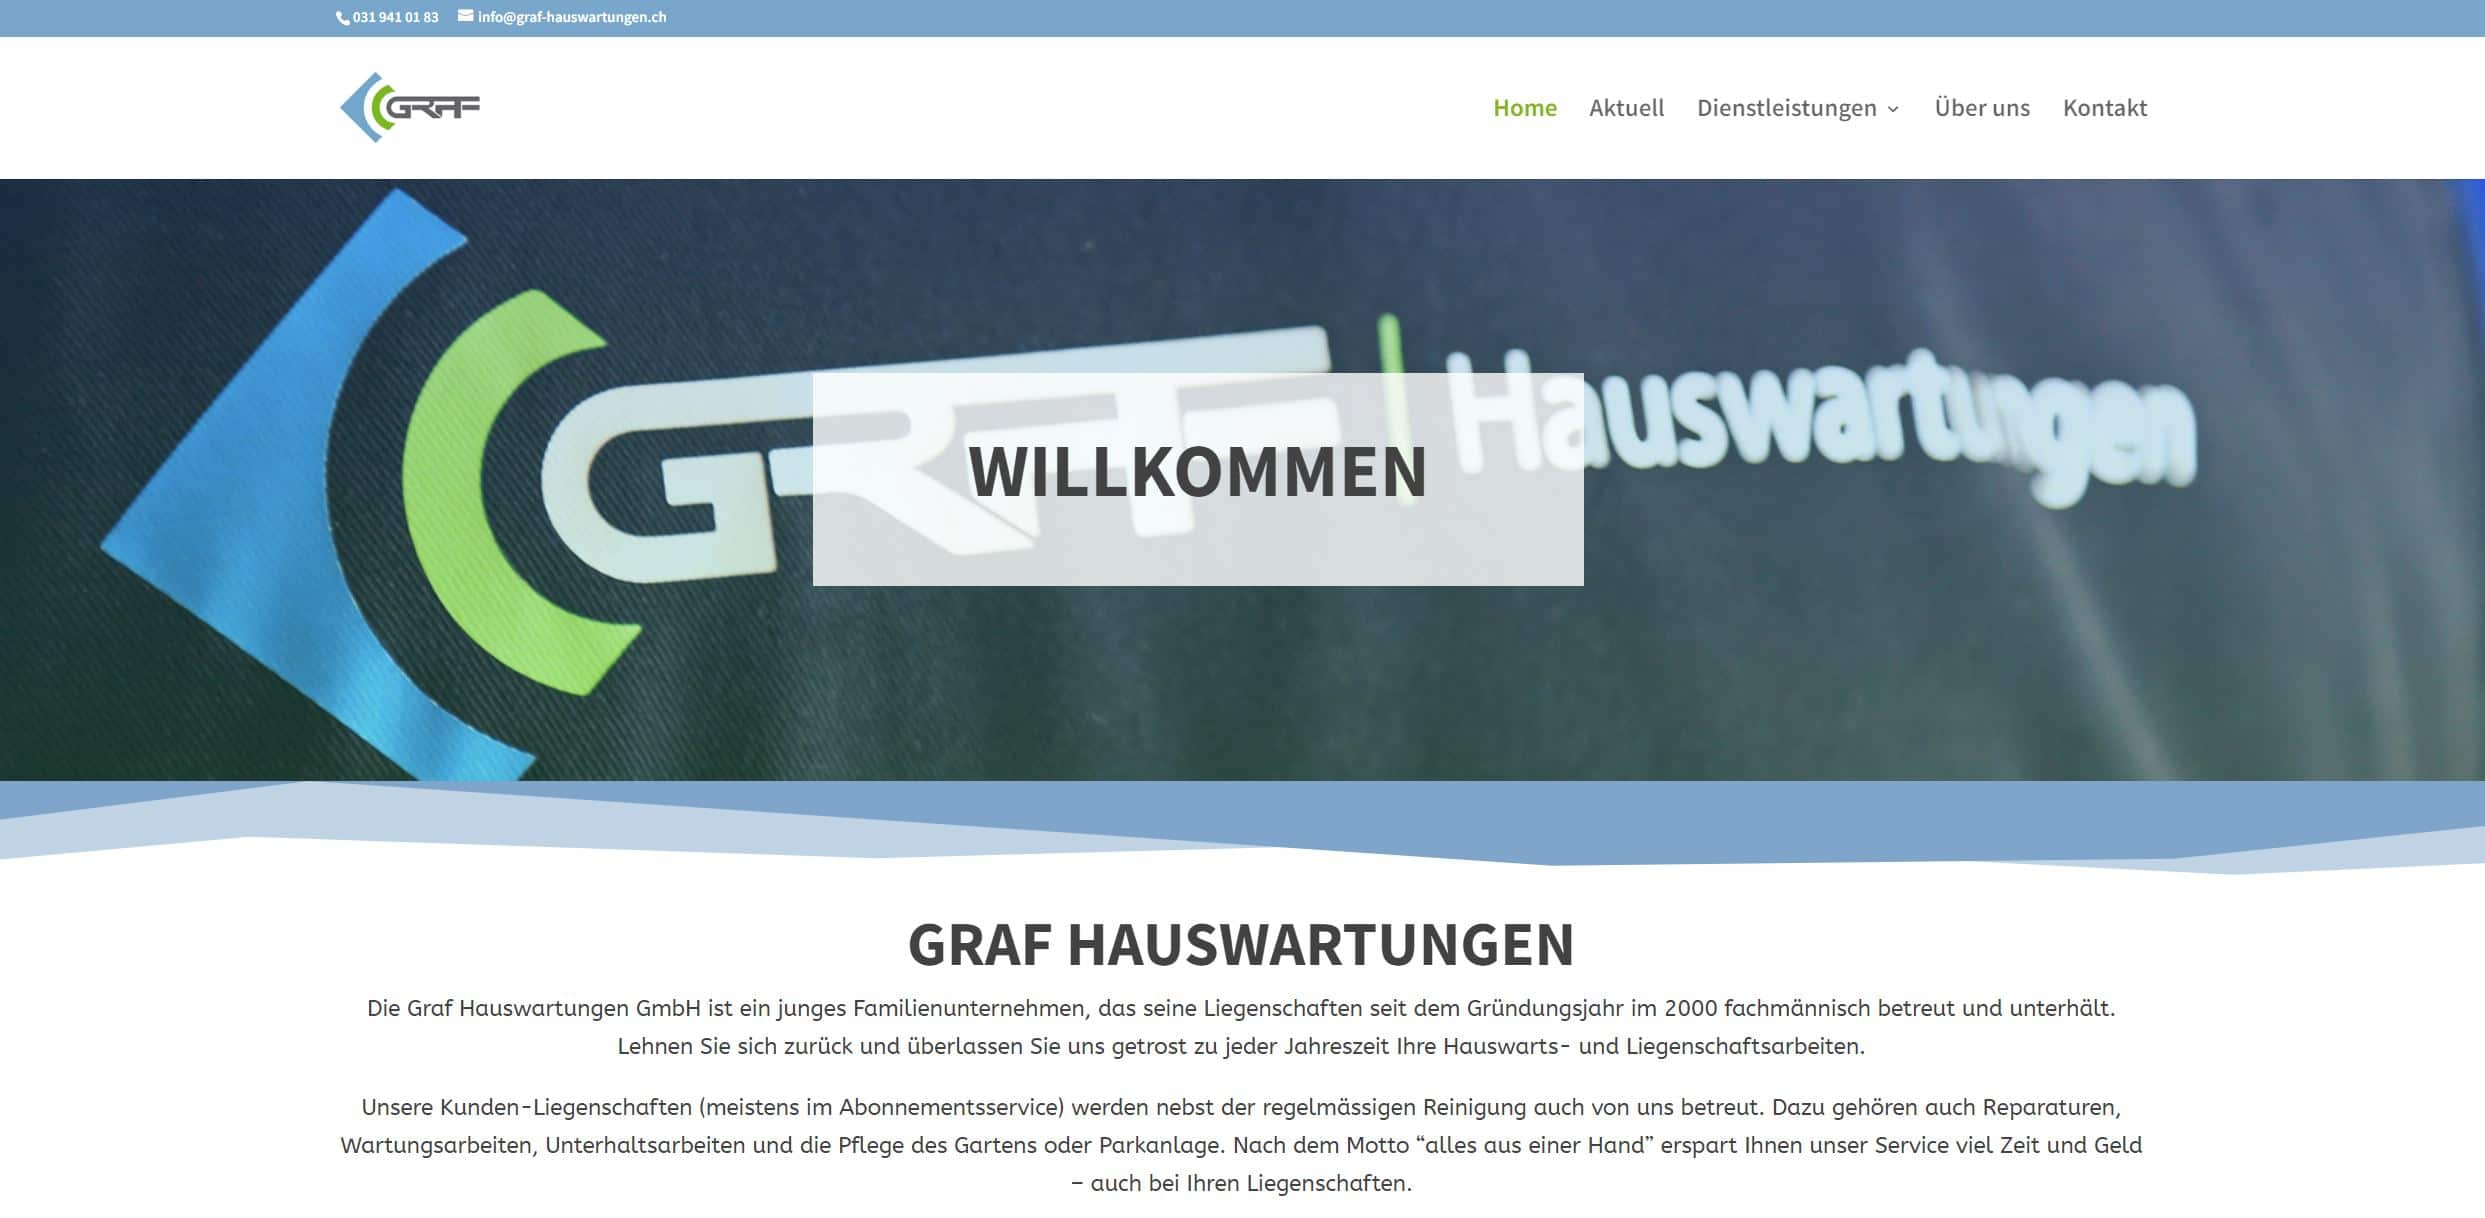 Graf Hauswartungen - Aktuelle Website